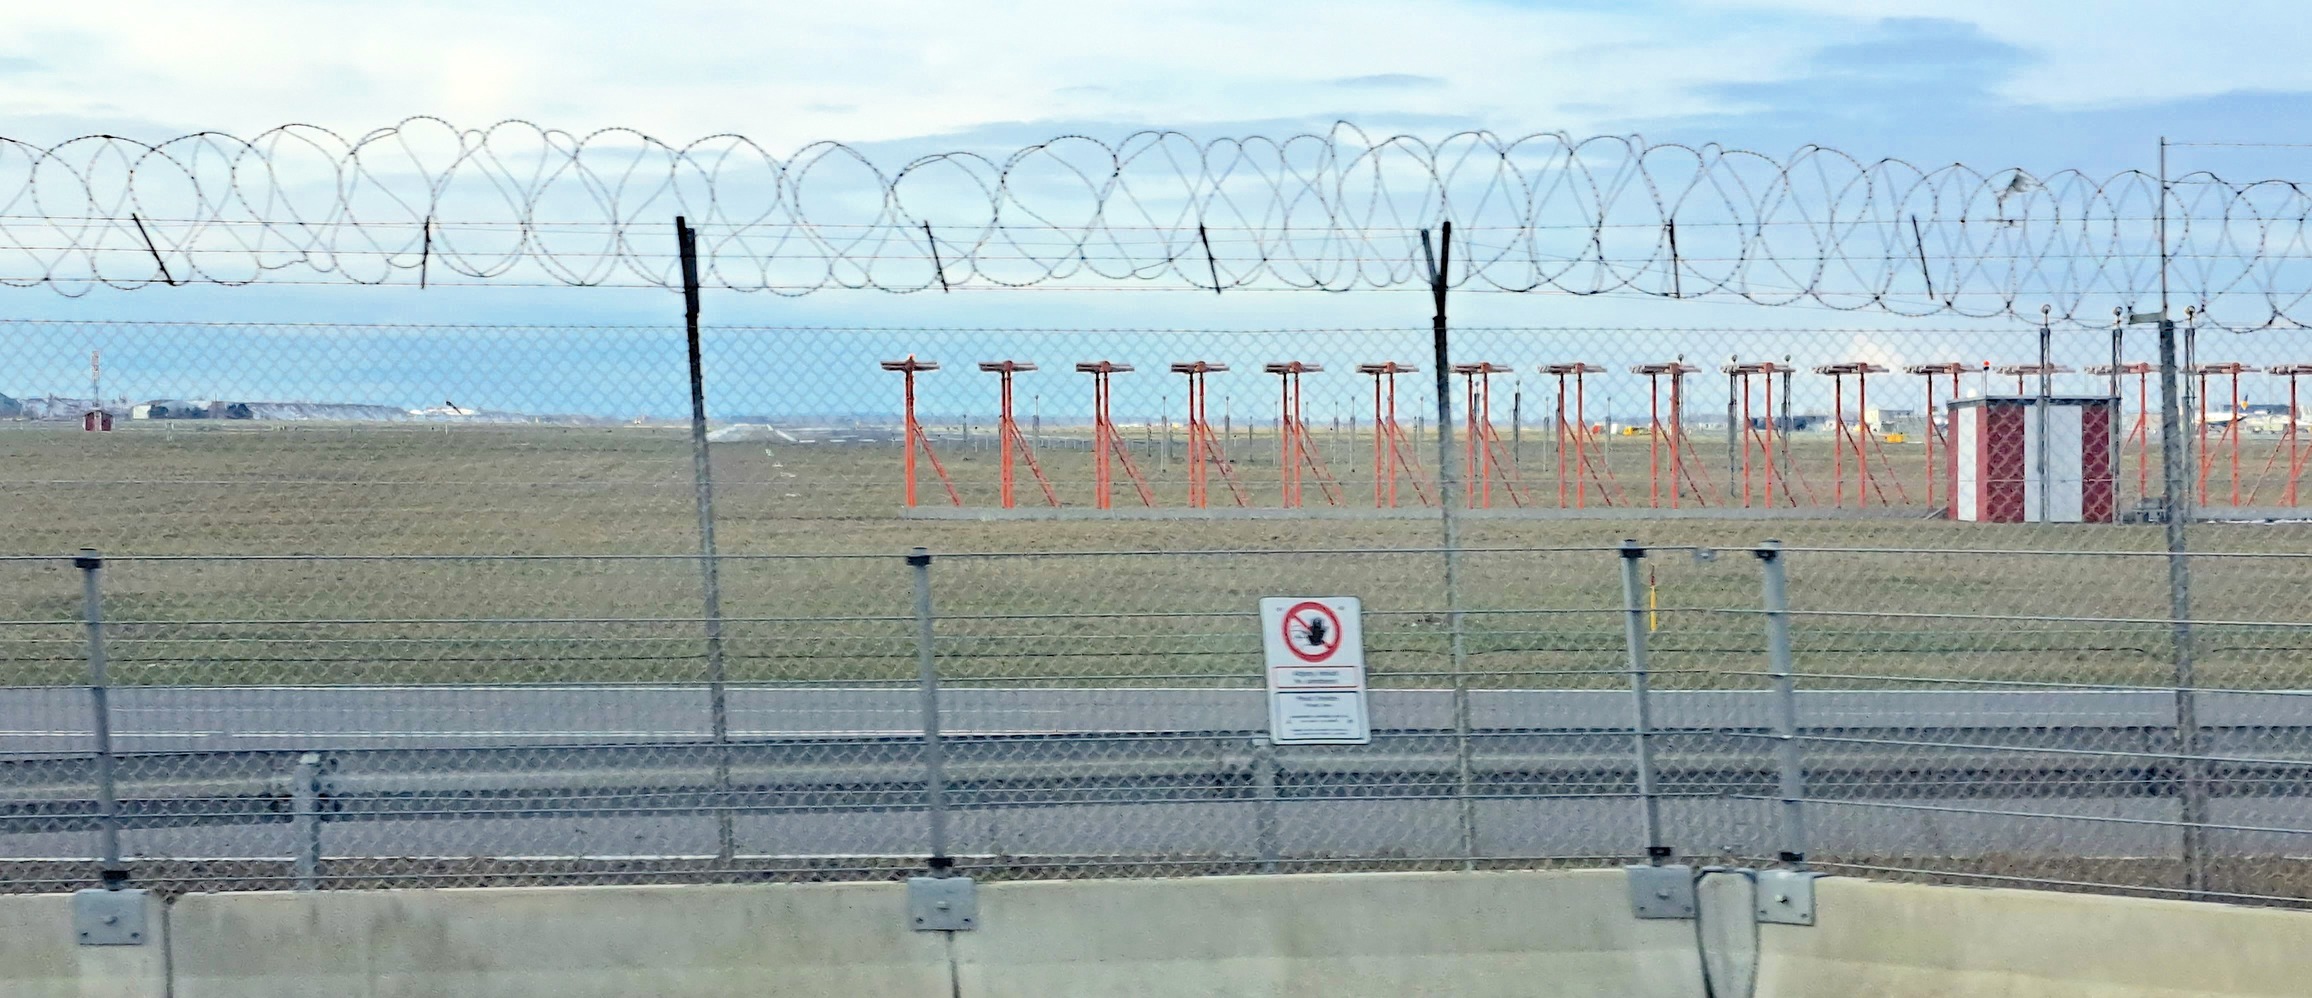 Inde bag trådhegnet udvides lufthavnens kapacitet. Foto: Kenneth Olsen.